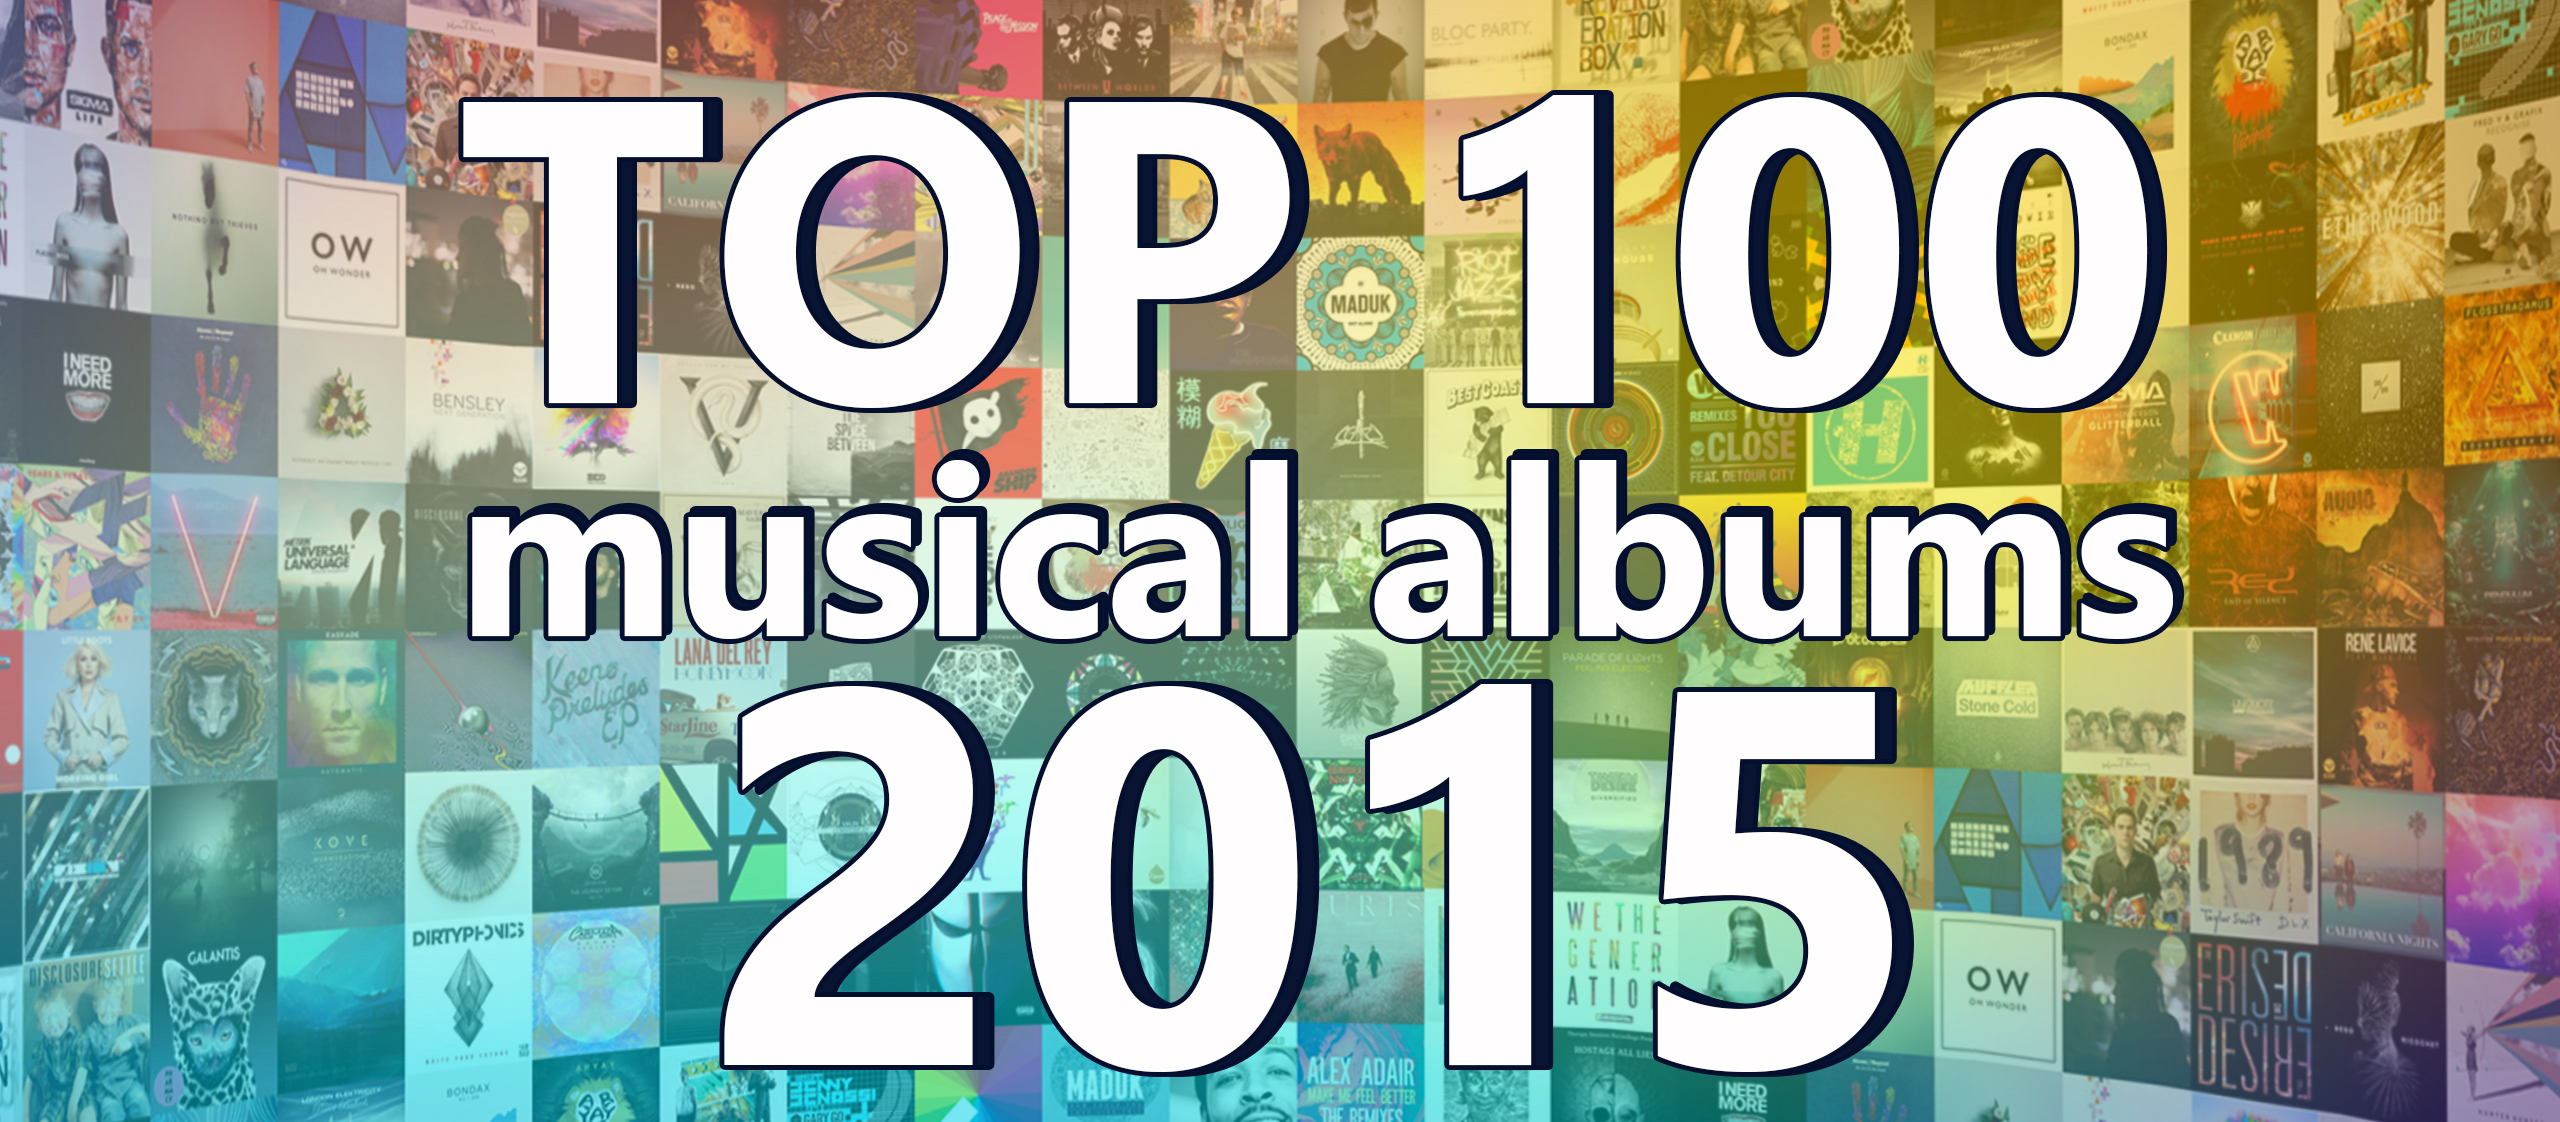 ТОП 100 Музыкальных альбомов 2015 по версии Splase / TOP 100 Musical Albums of 2015 version by Splase 